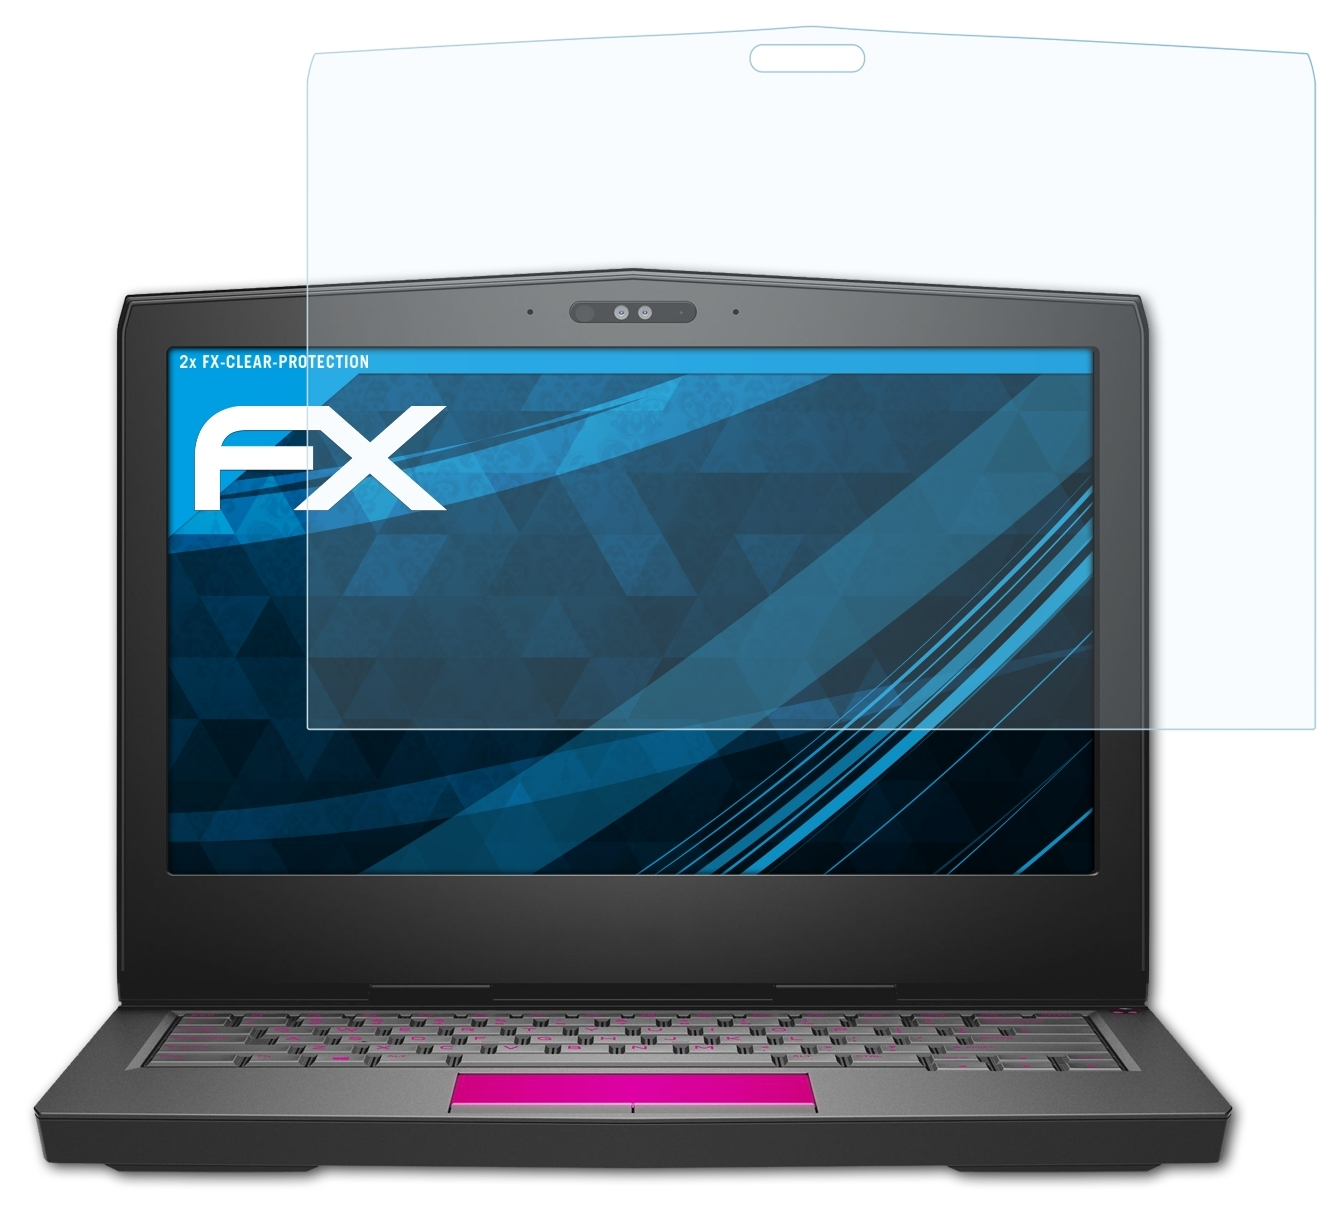 13) Displayschutz(für ATFOLIX Dell 2x Alienware FX-Clear